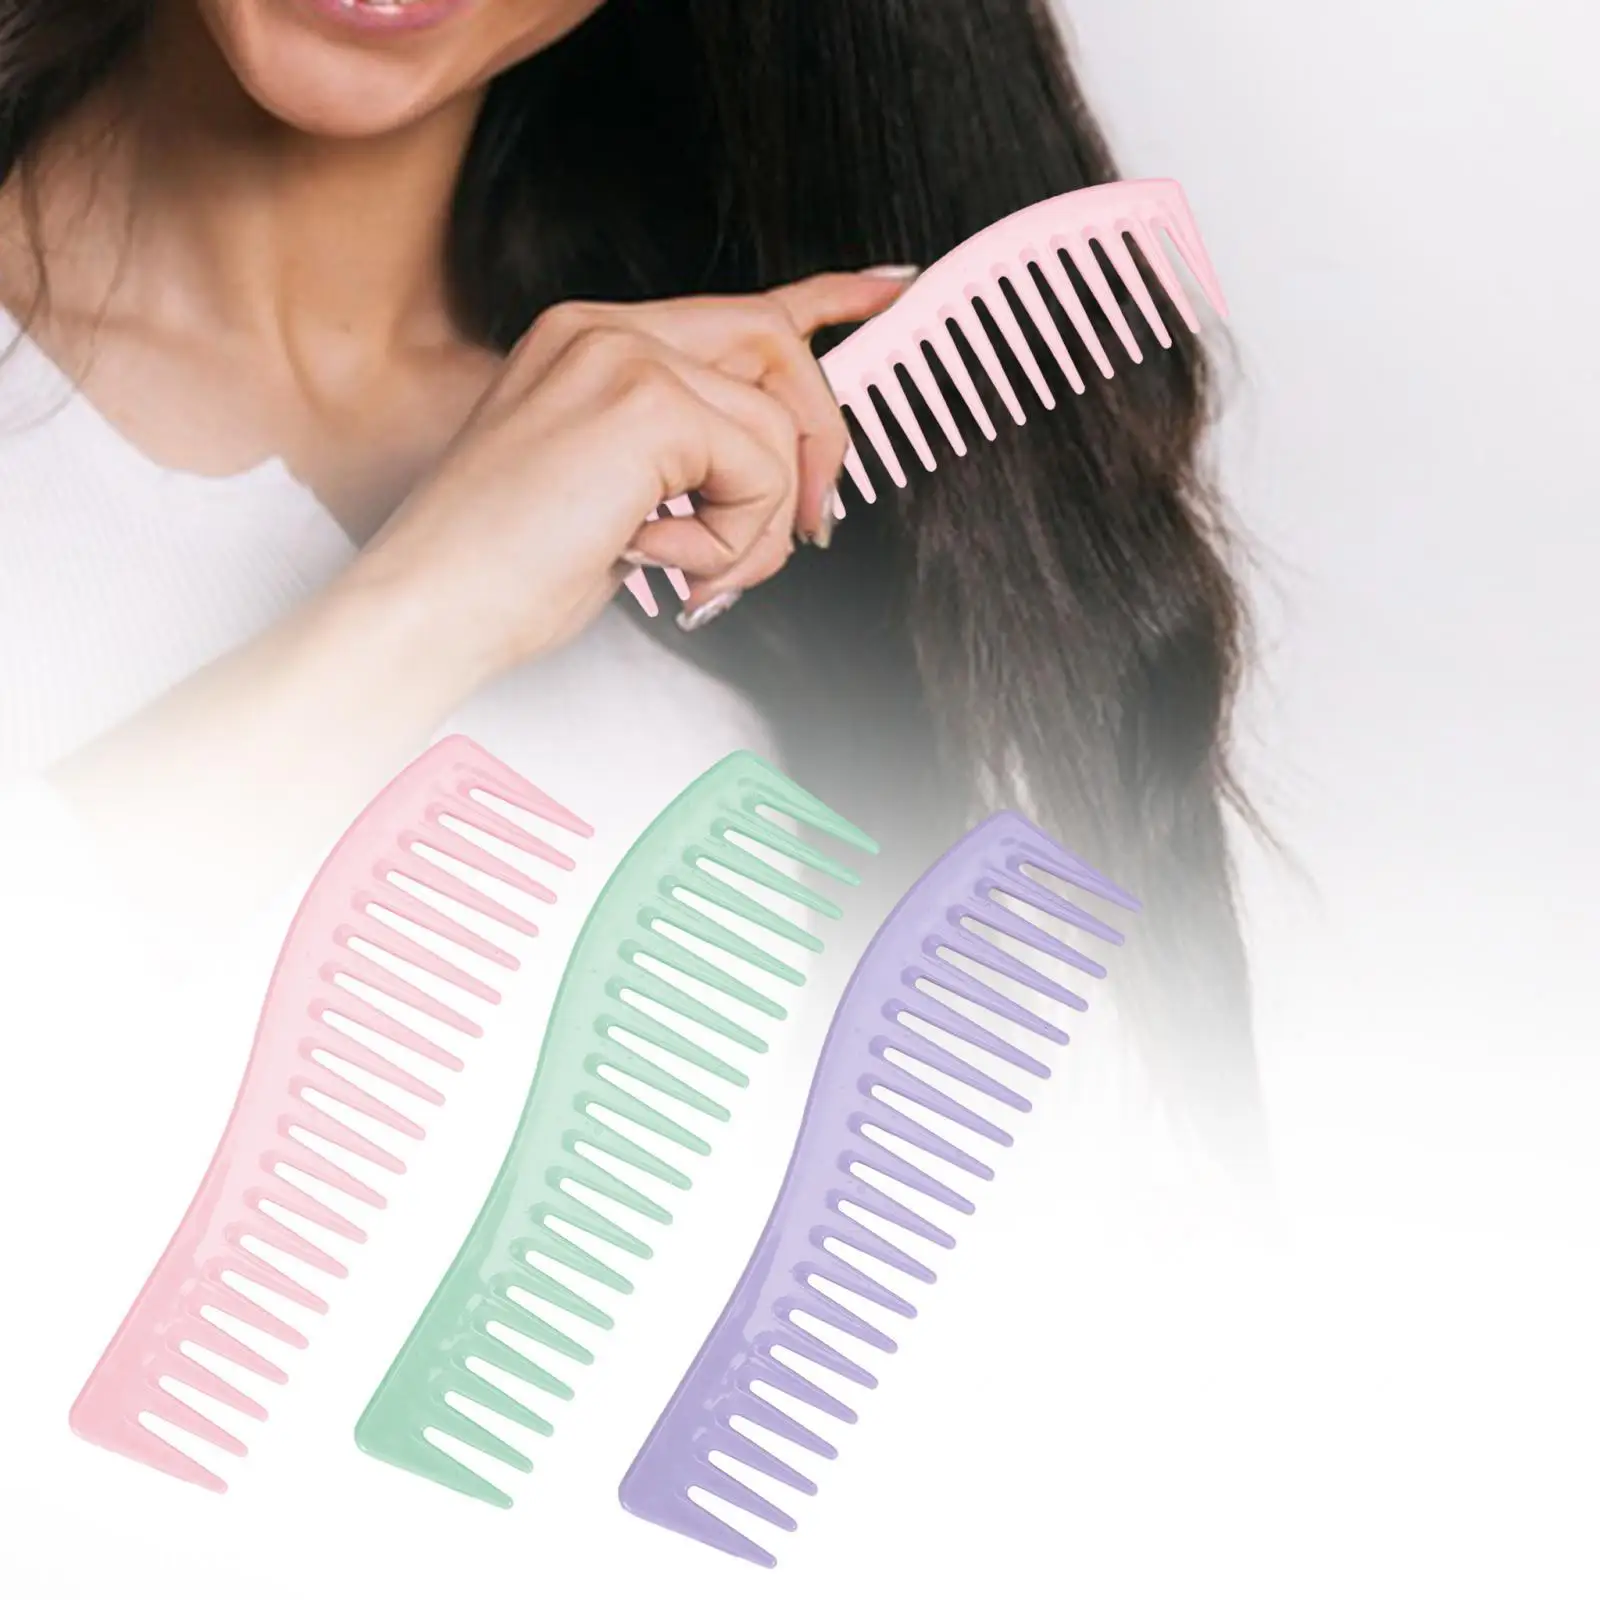 

Широкозубная расческа, Антистатическая Расческа для укладки волос без ручки, расческа для распутывания волос, расческа для длинных волос, вьющихся, влажных волос